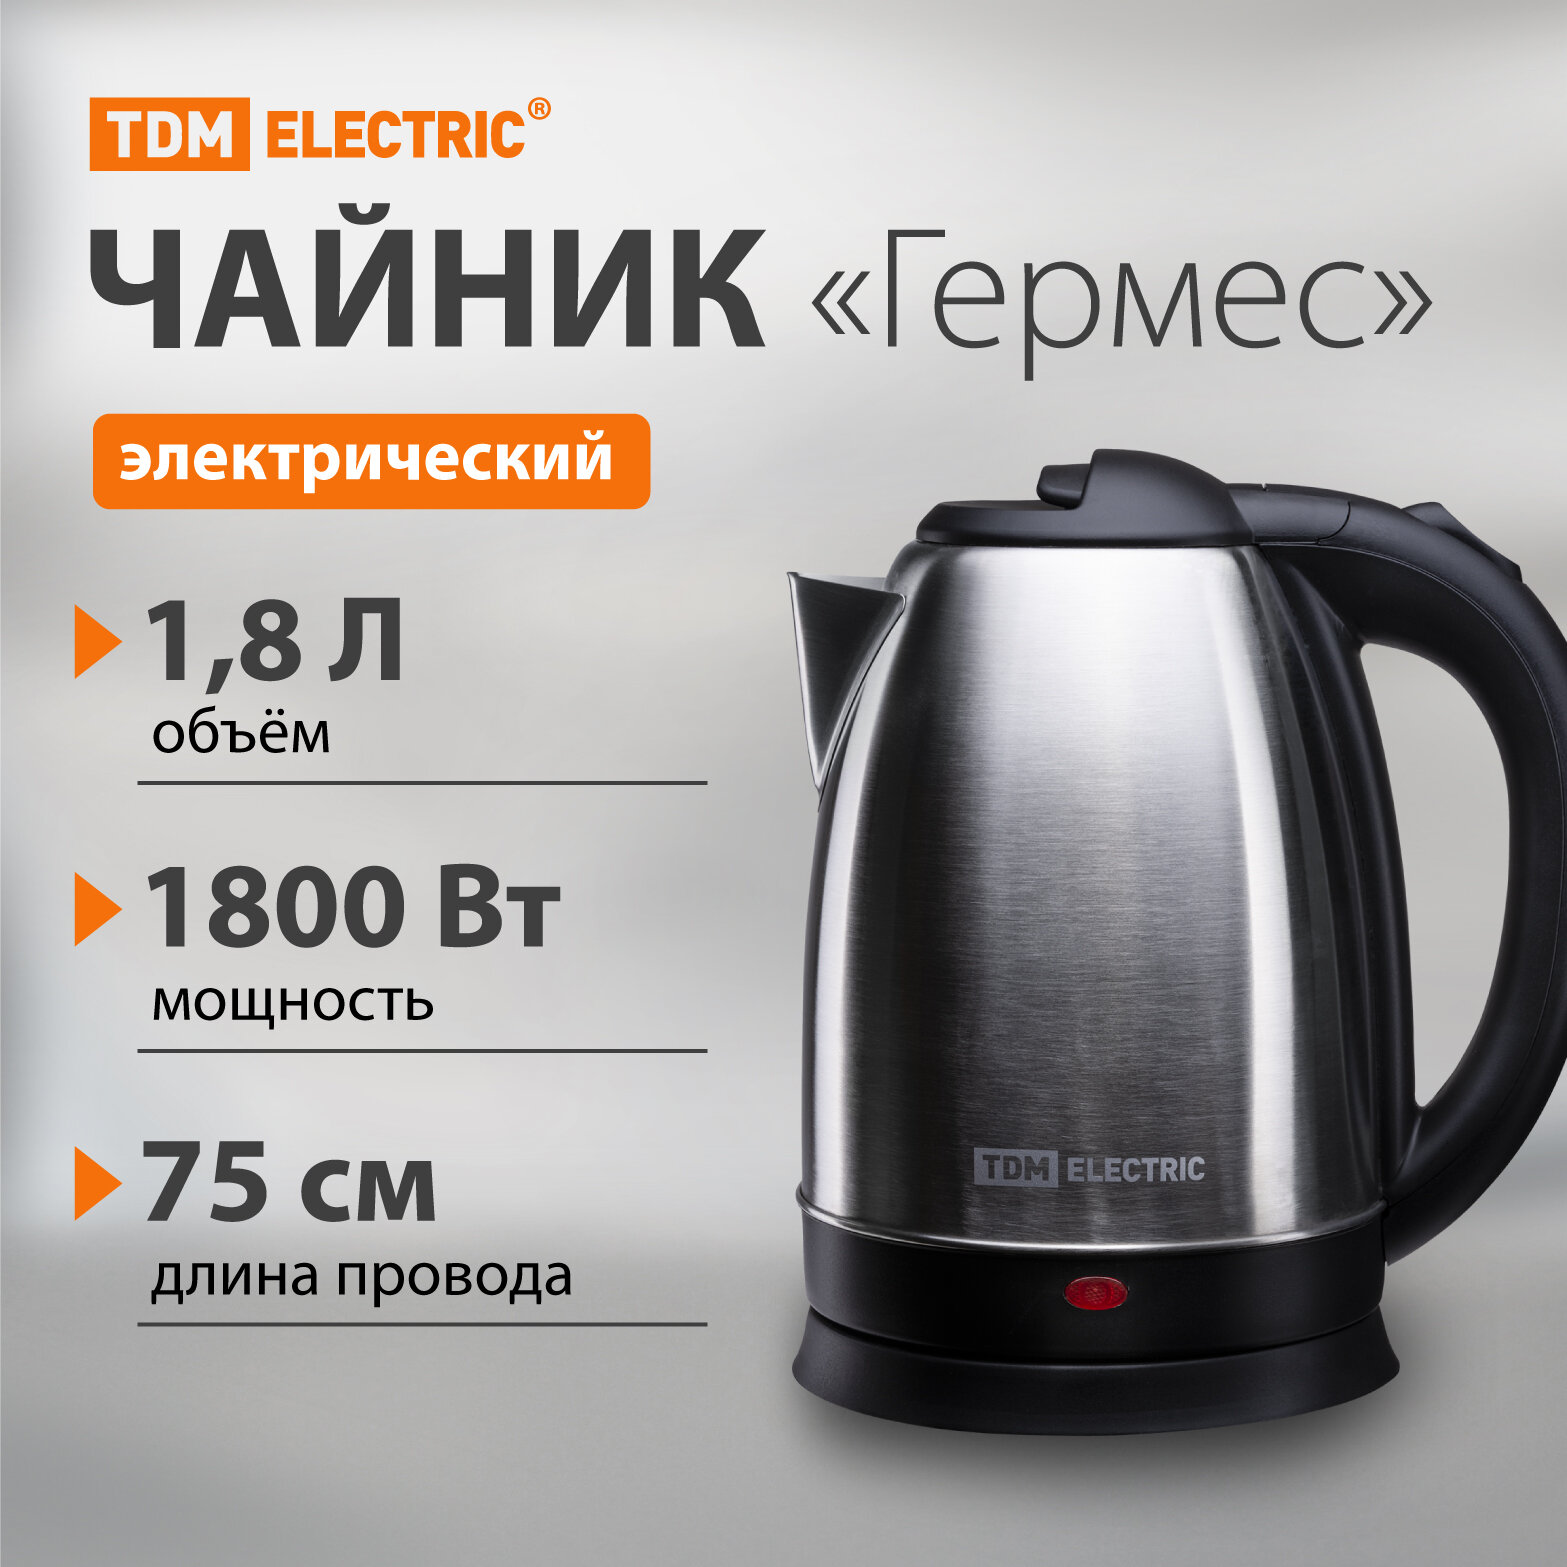 Электрический чайник "Гермес", нержавеющая сталь, 1,8 л, 1800 Вт, TDM